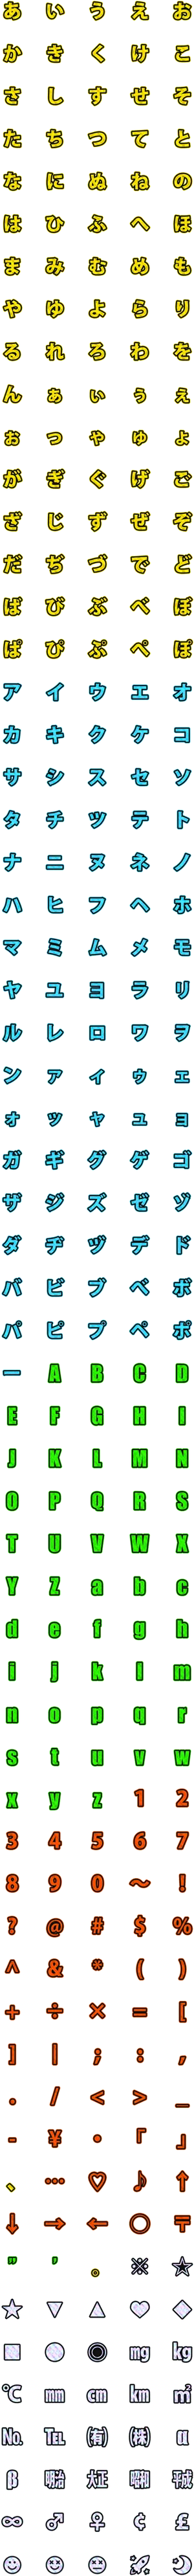 Colorful Sparkle Emoji Pattern PNG image